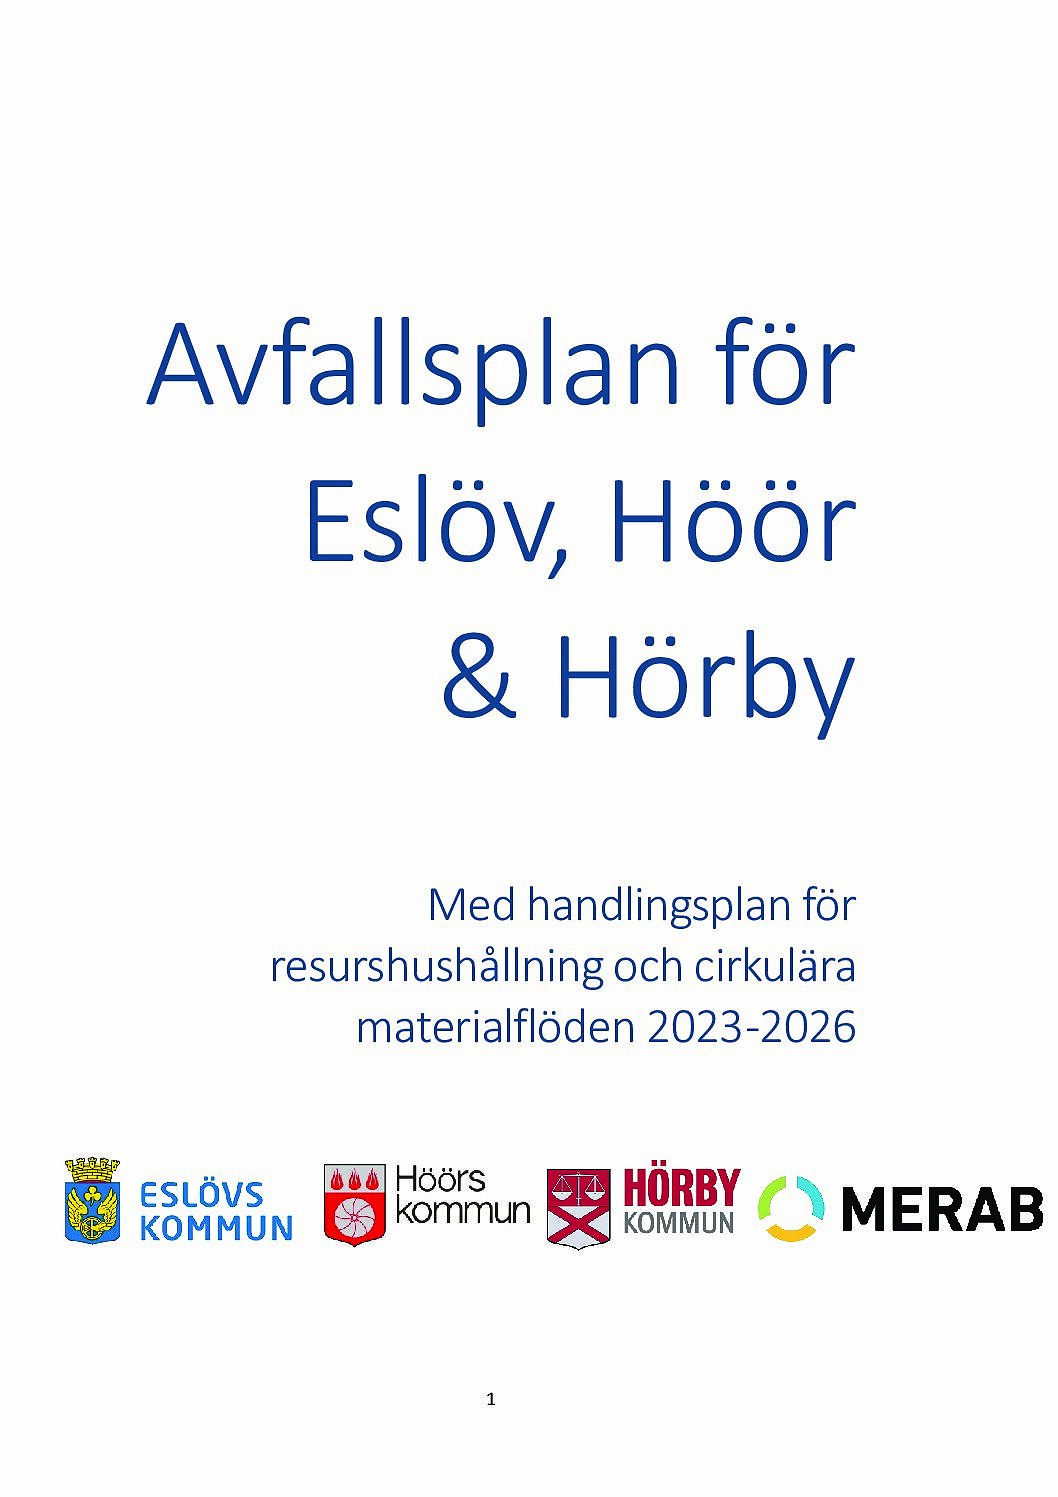 Avfallsplan för Eslöv Höör och Hörby kommuner inklusive bilagor